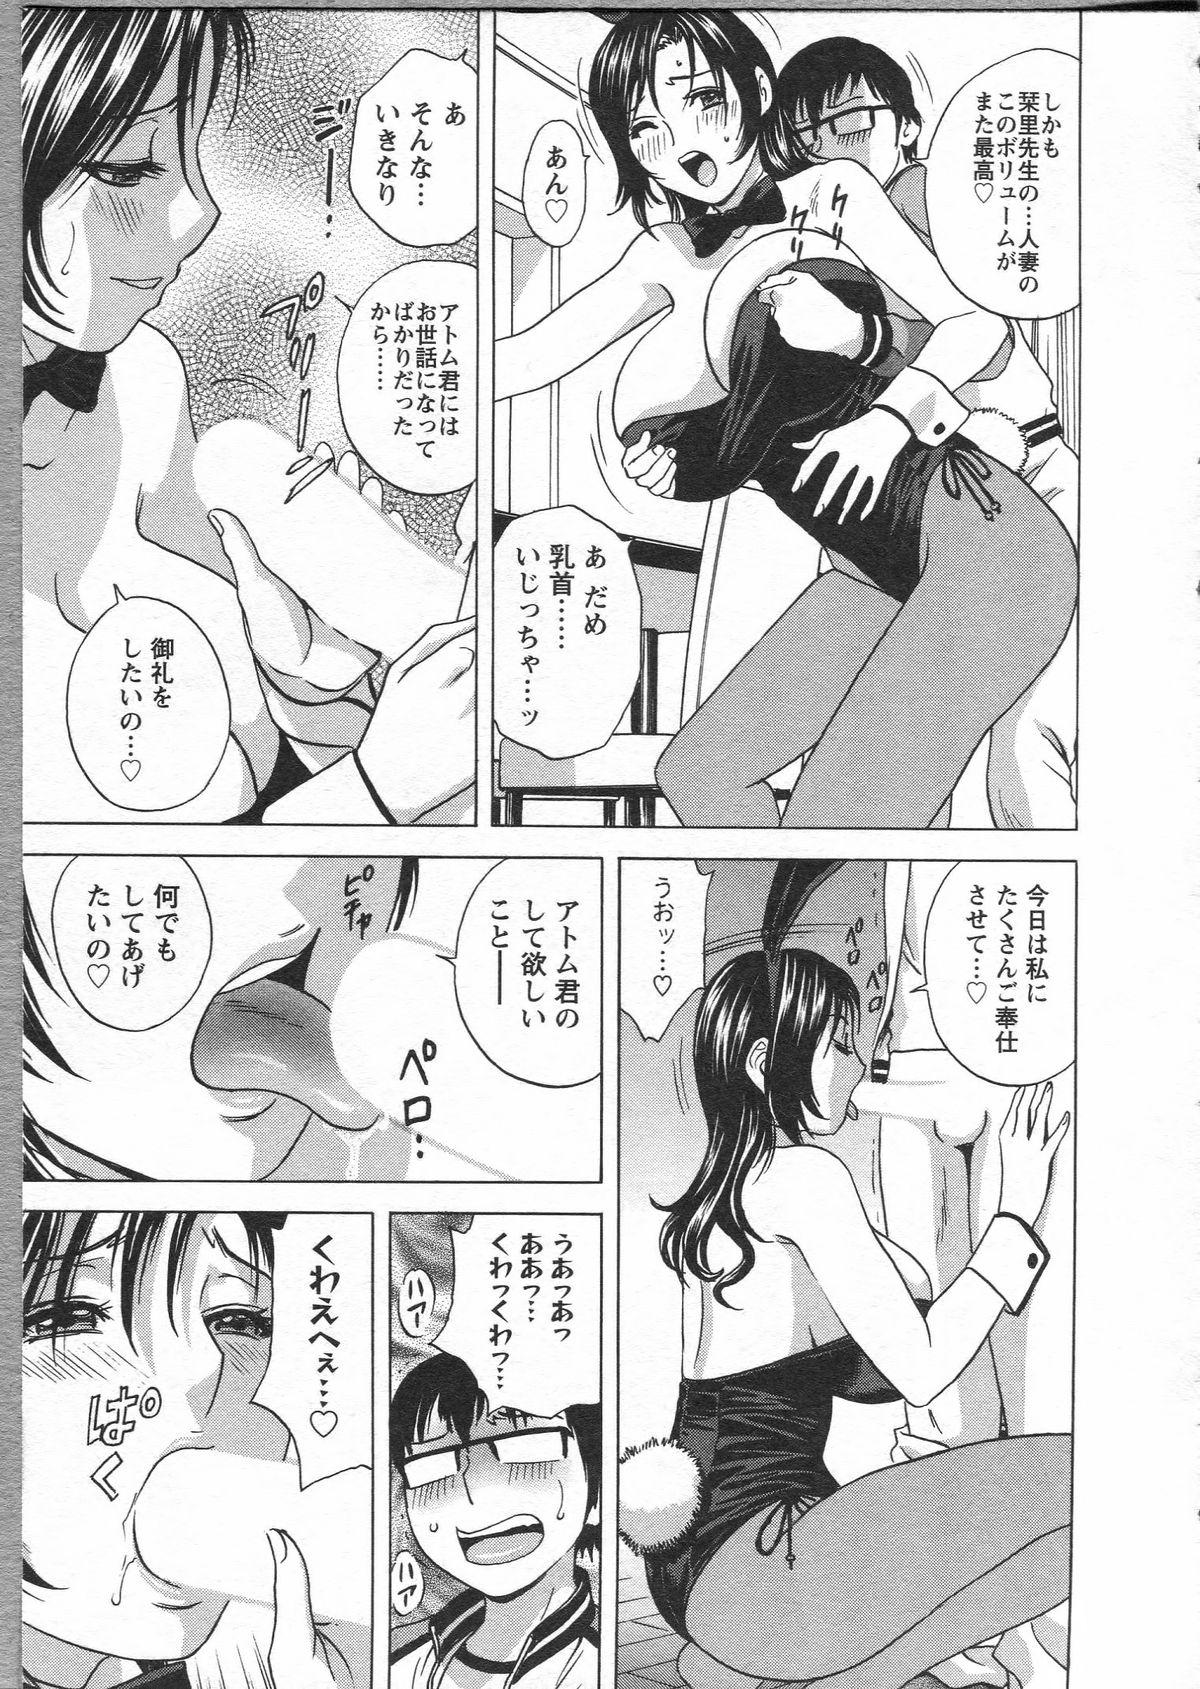 Manga no youna Hitozuma to no Hibi - Days with Married Women such as Comics. 178